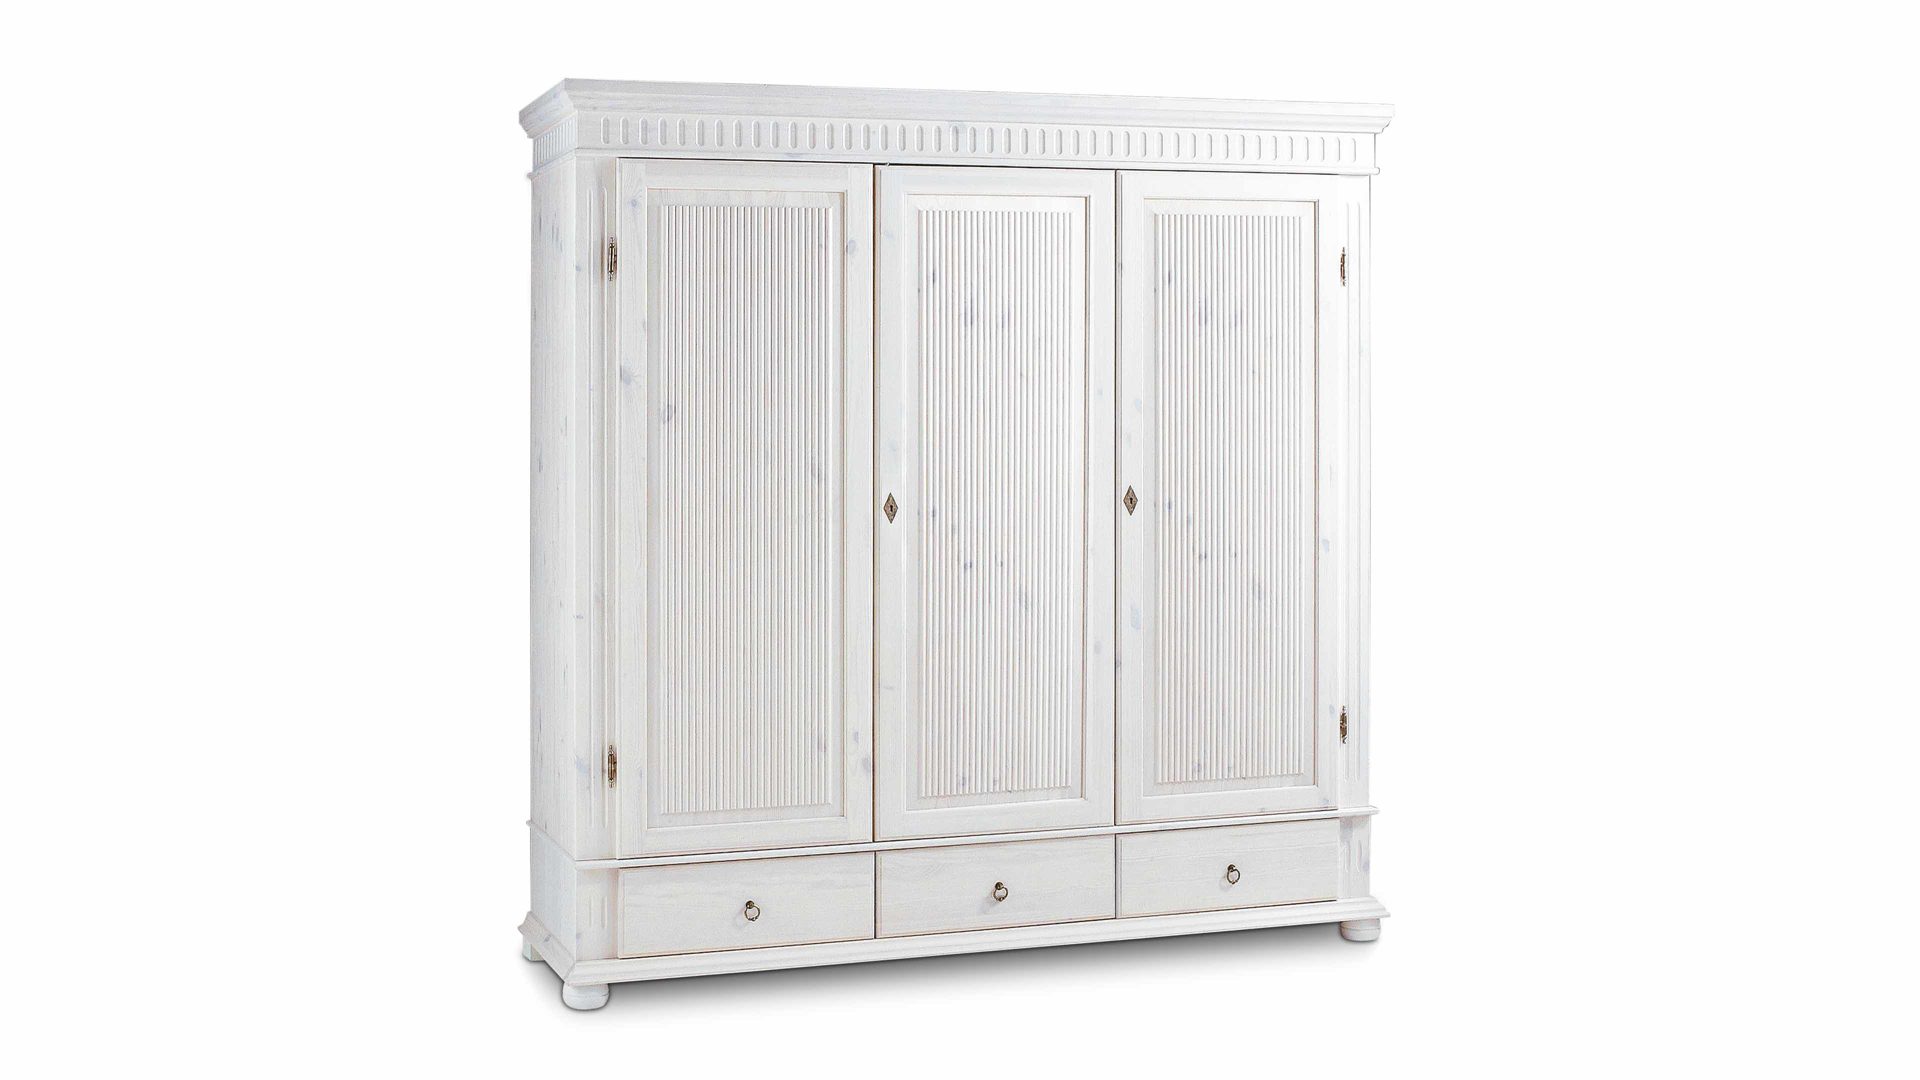 Kleiderschrank Euro diffusion aus Holz in Weiß Kleiderschrank fürs Schlafzimmer Weiß - drei Türen, drei Schubladen